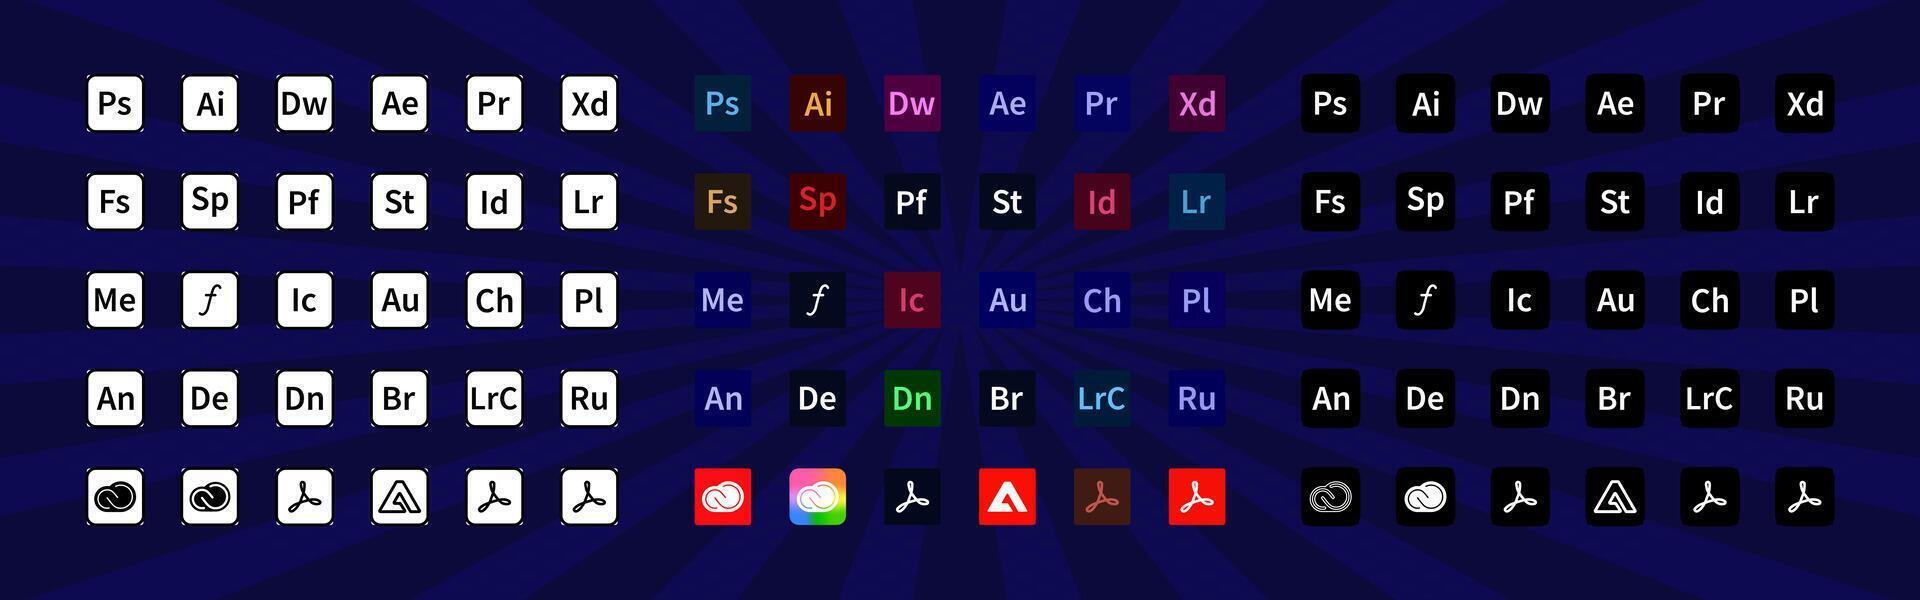 Adobe producten. logotype reeks van Adobe apps illustrator, photoshop, creatief wolk, na Effecten, lichte kamer, première pro. programma's logos verzameling. redactioneel vector illustratie